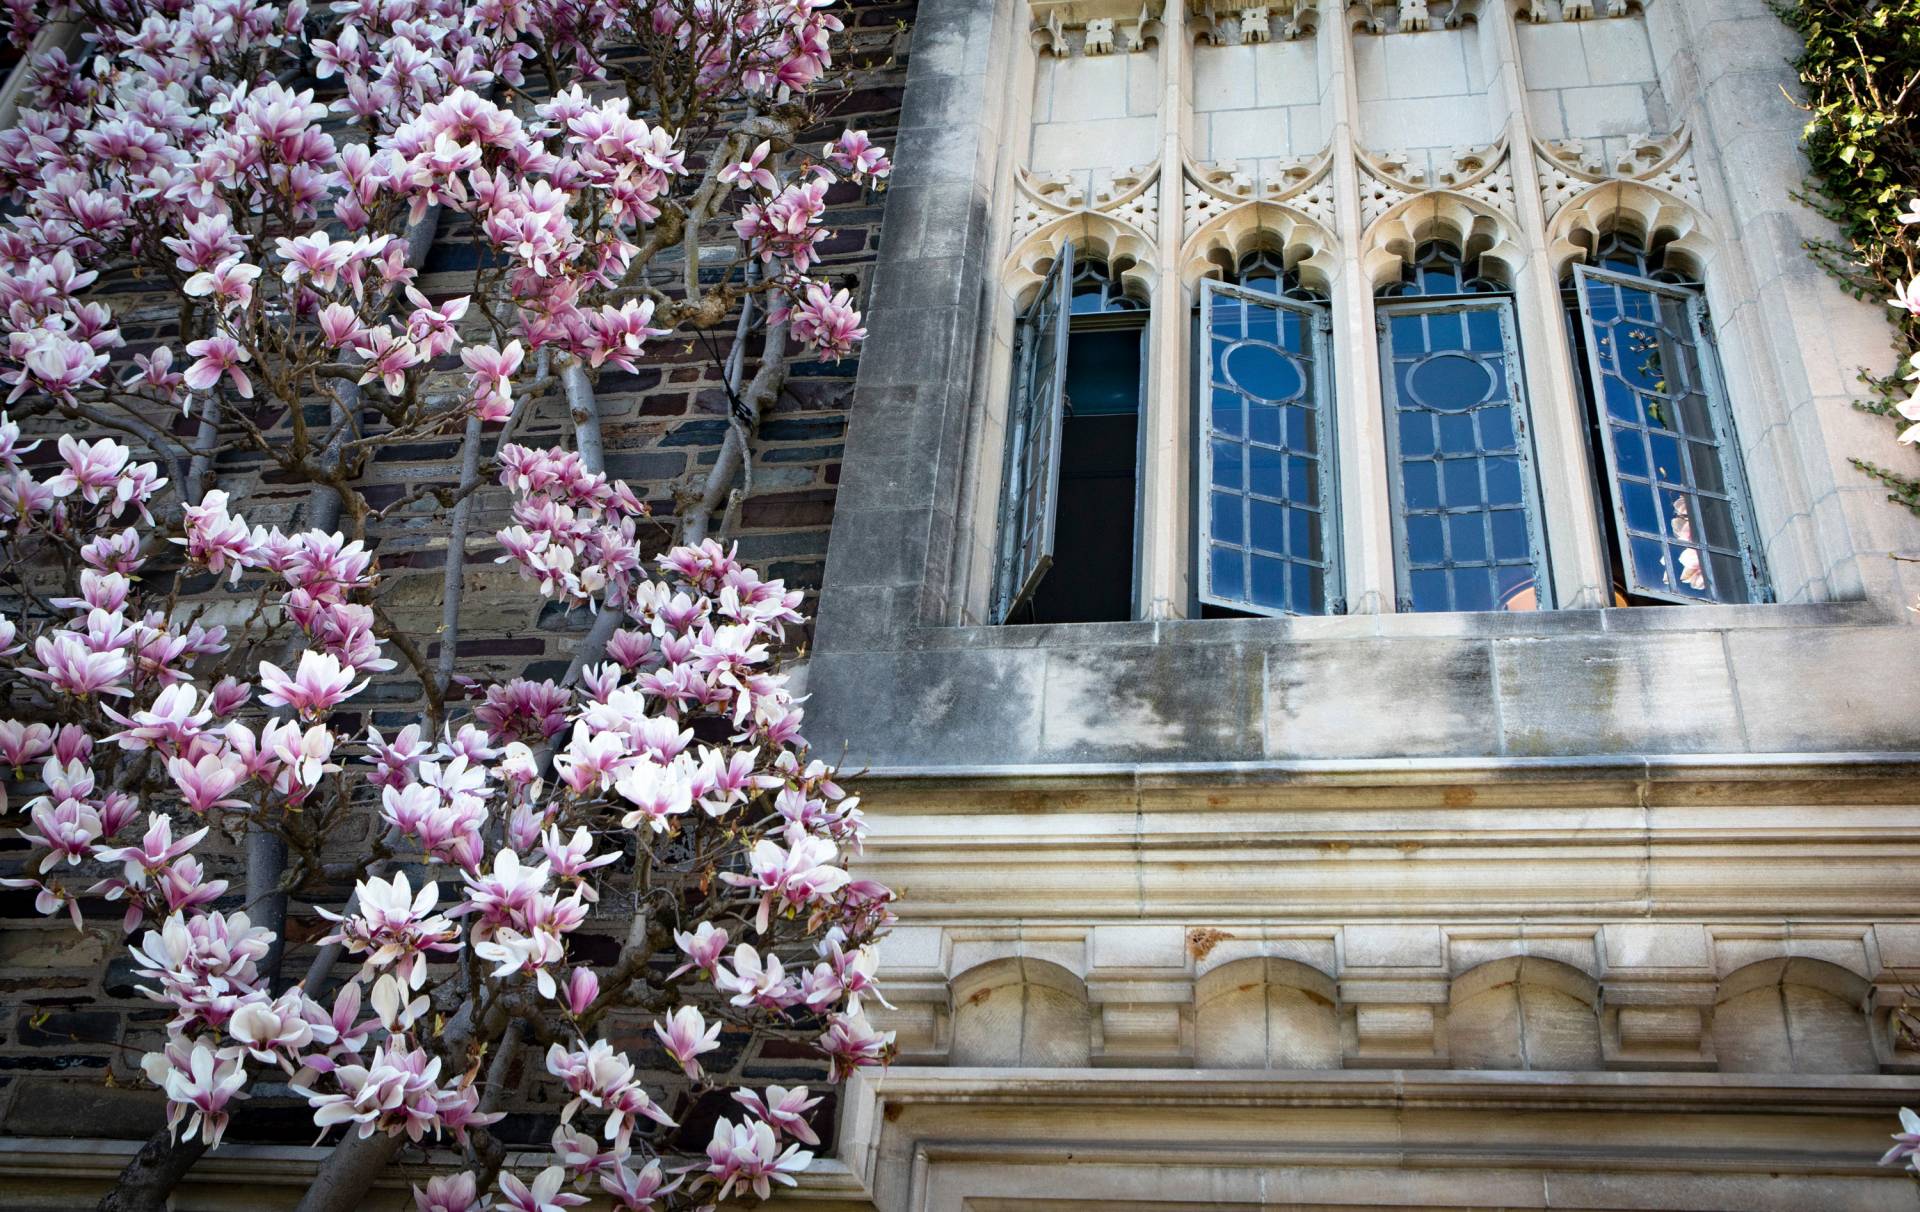 magnolias next to an open neogothic window